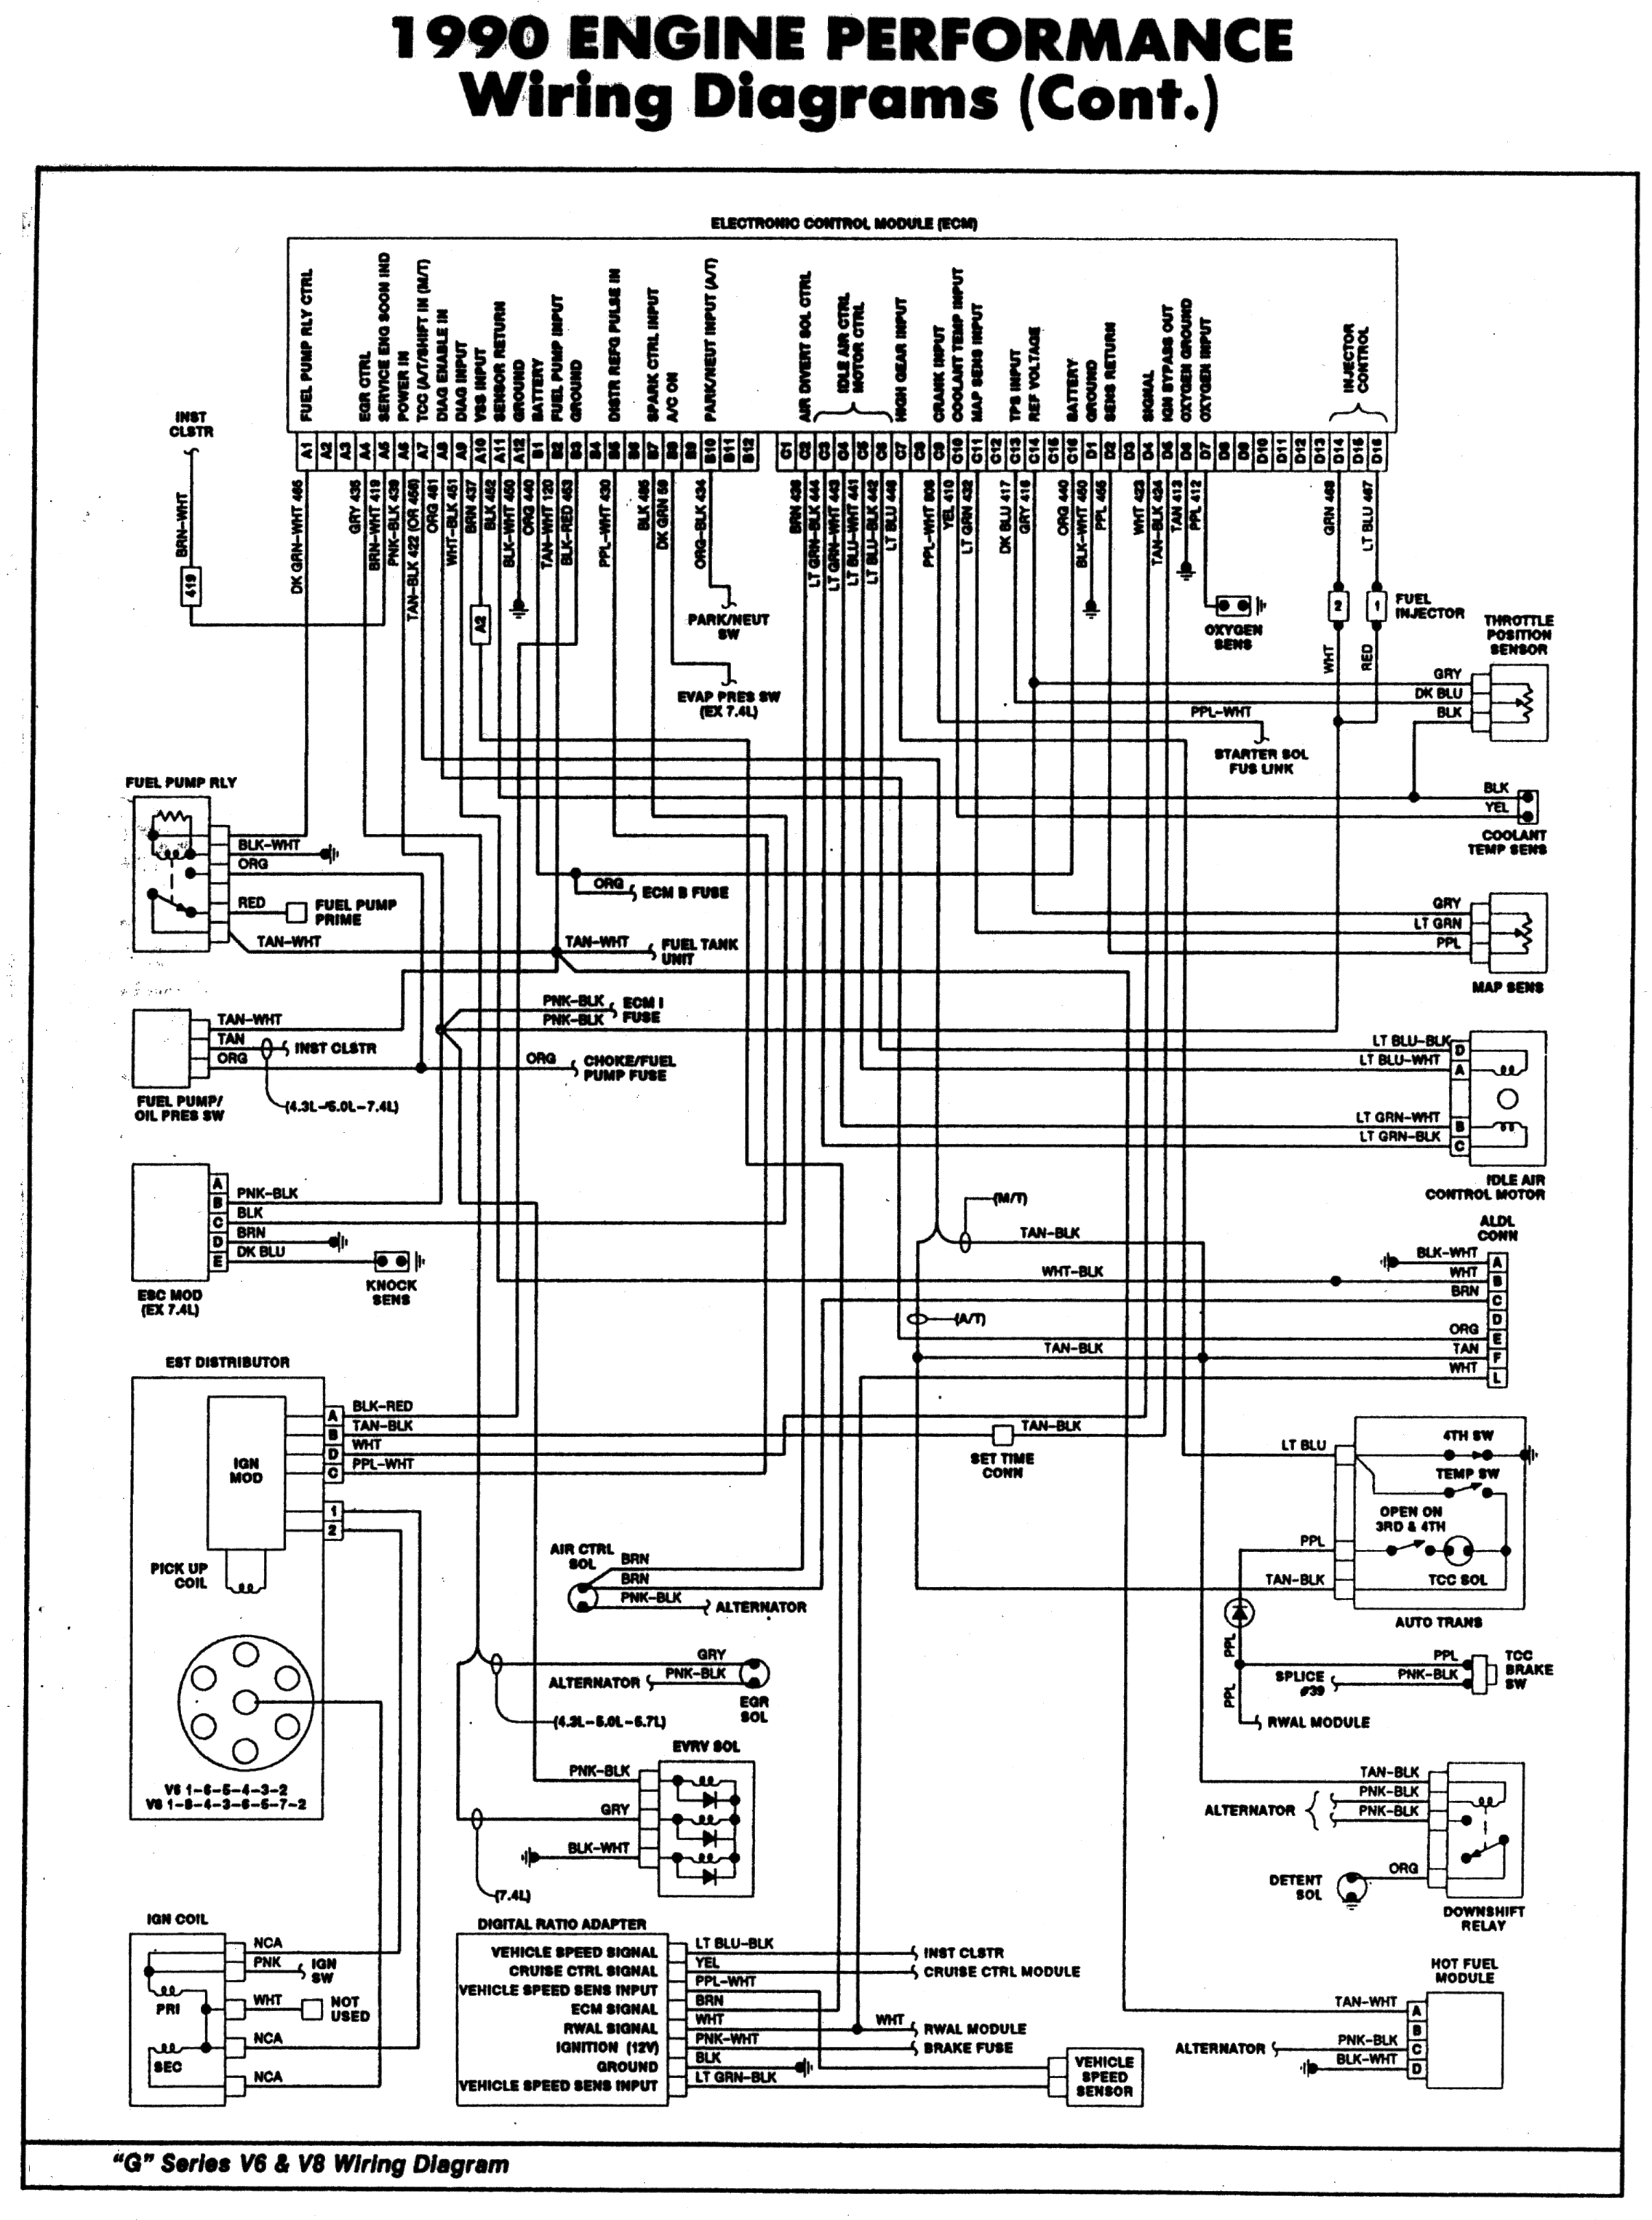 1990 Chevy Truck Ecm Wiring - Wiring Diagram Detailed - 1990 Chevy Truck Wiring Diagram